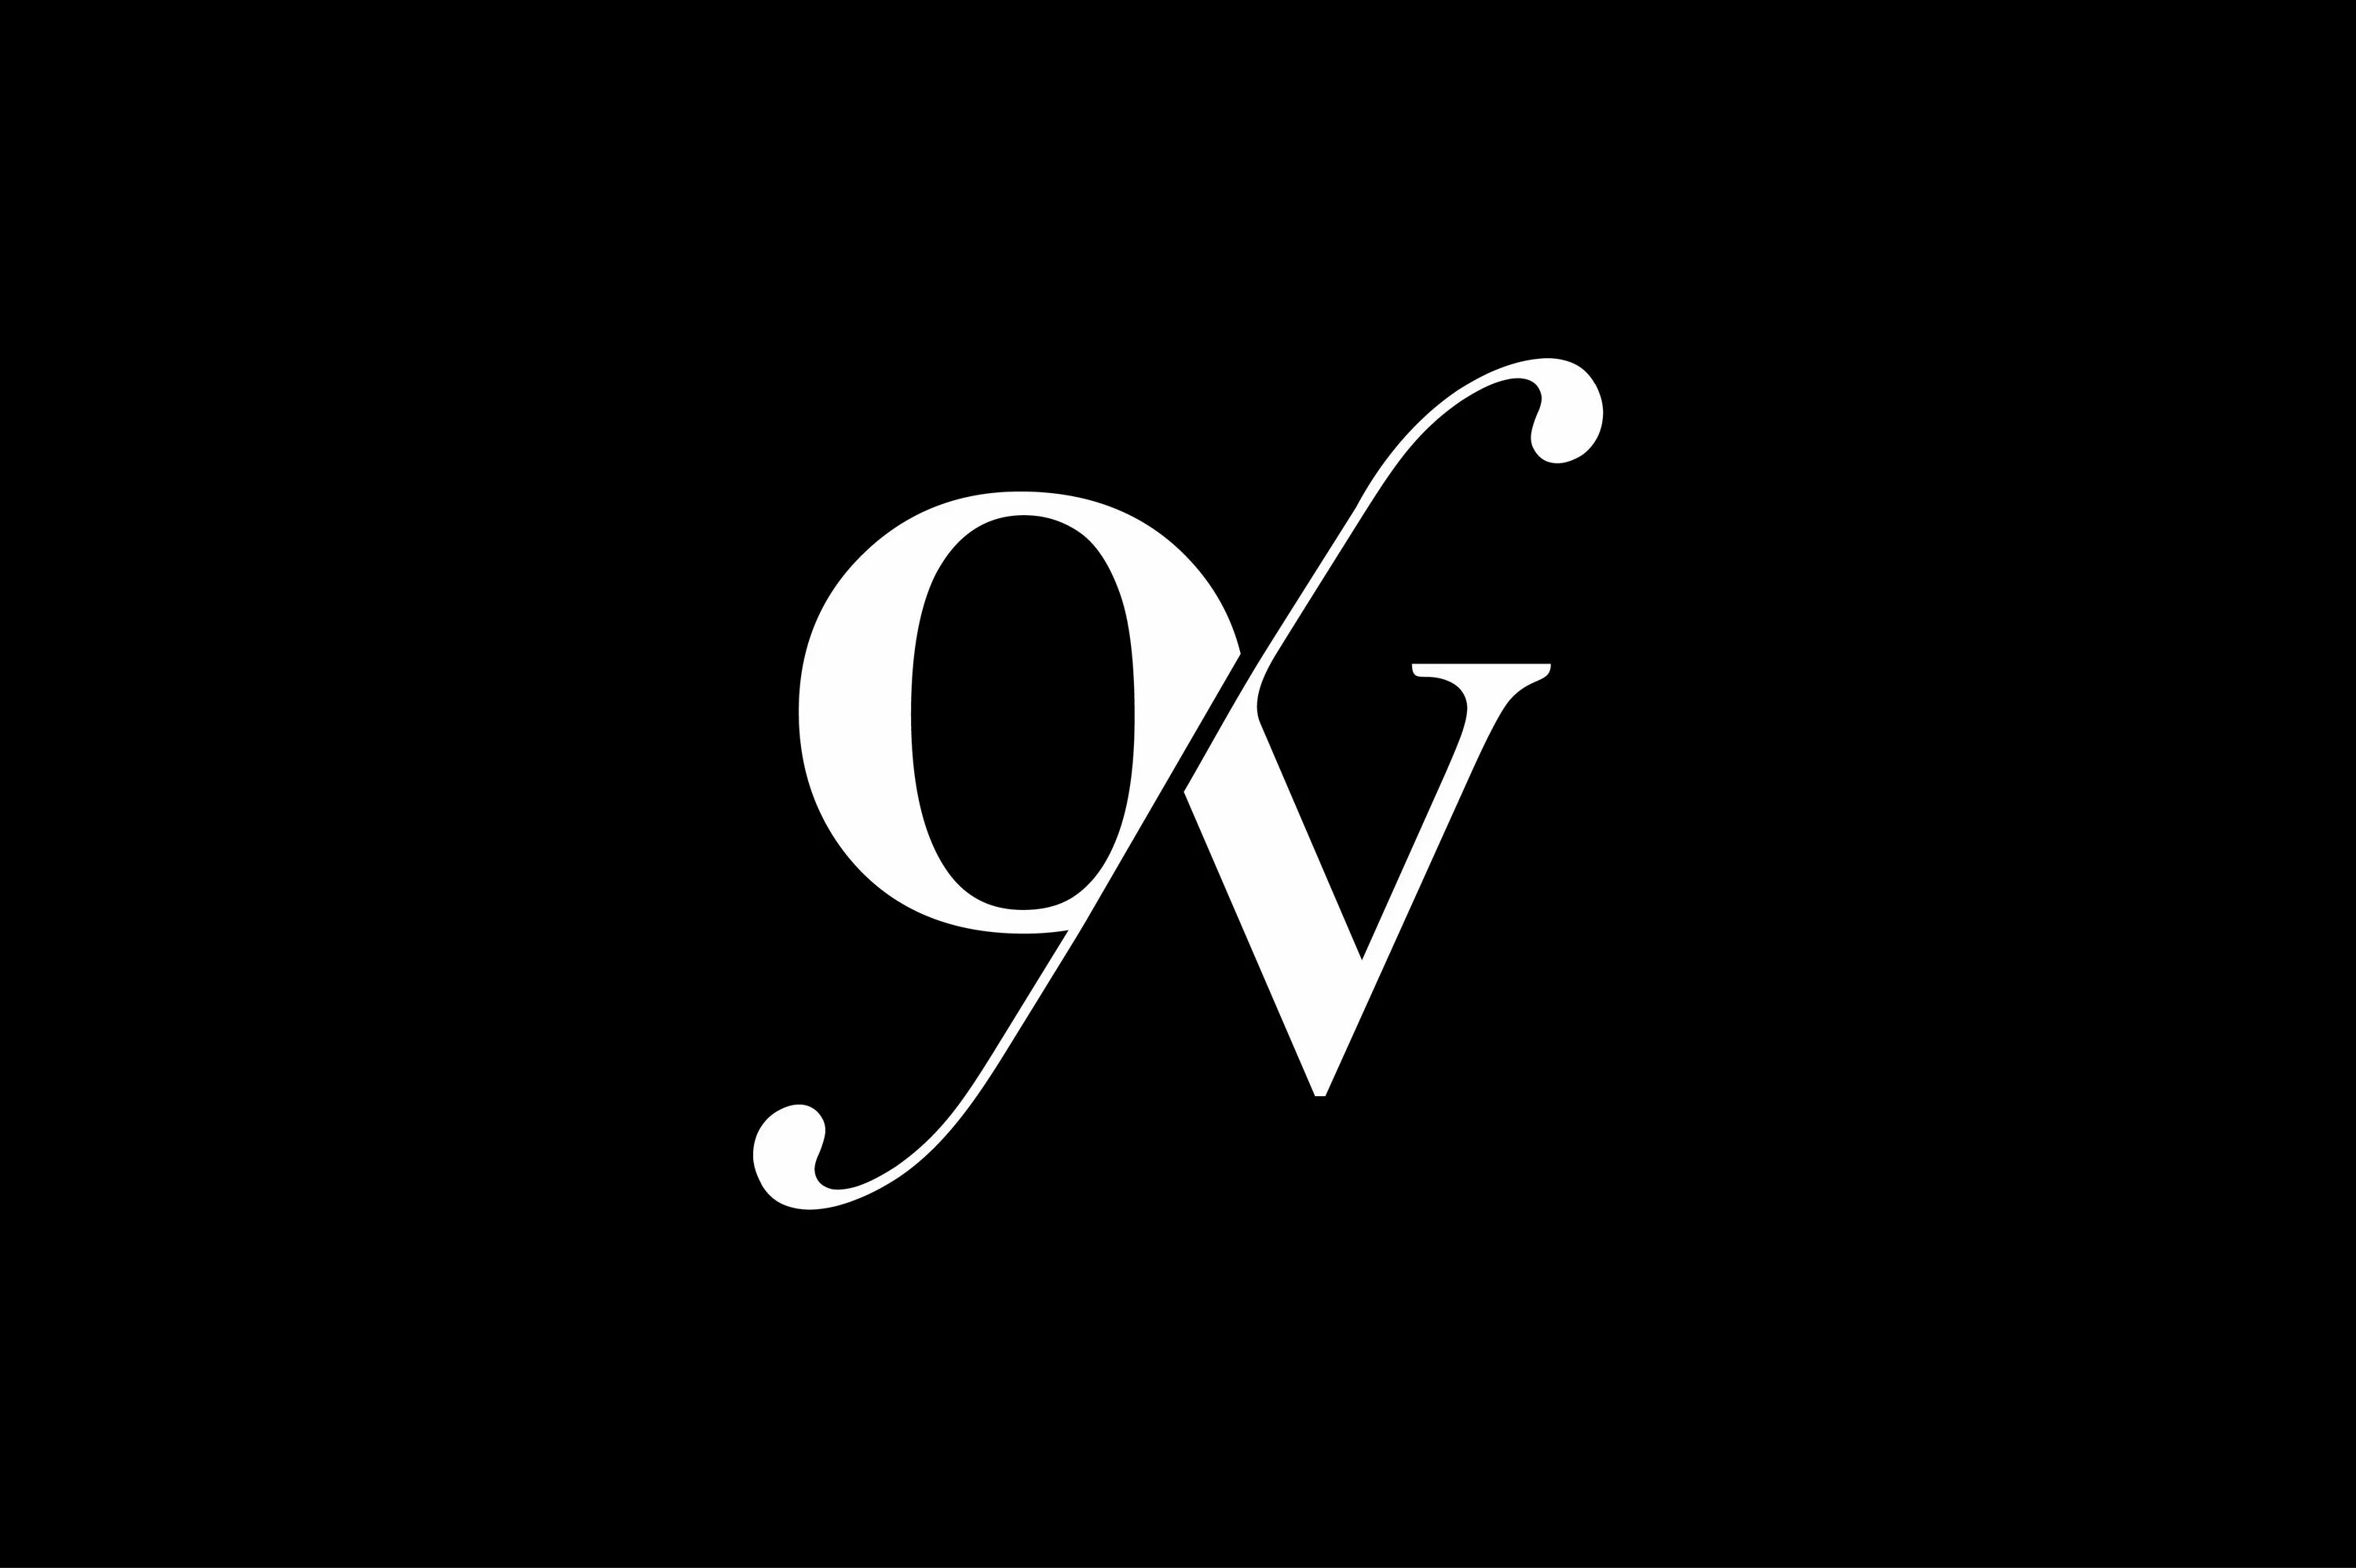 Логотип v. GV logo. Буквы ov. Логотип CV.